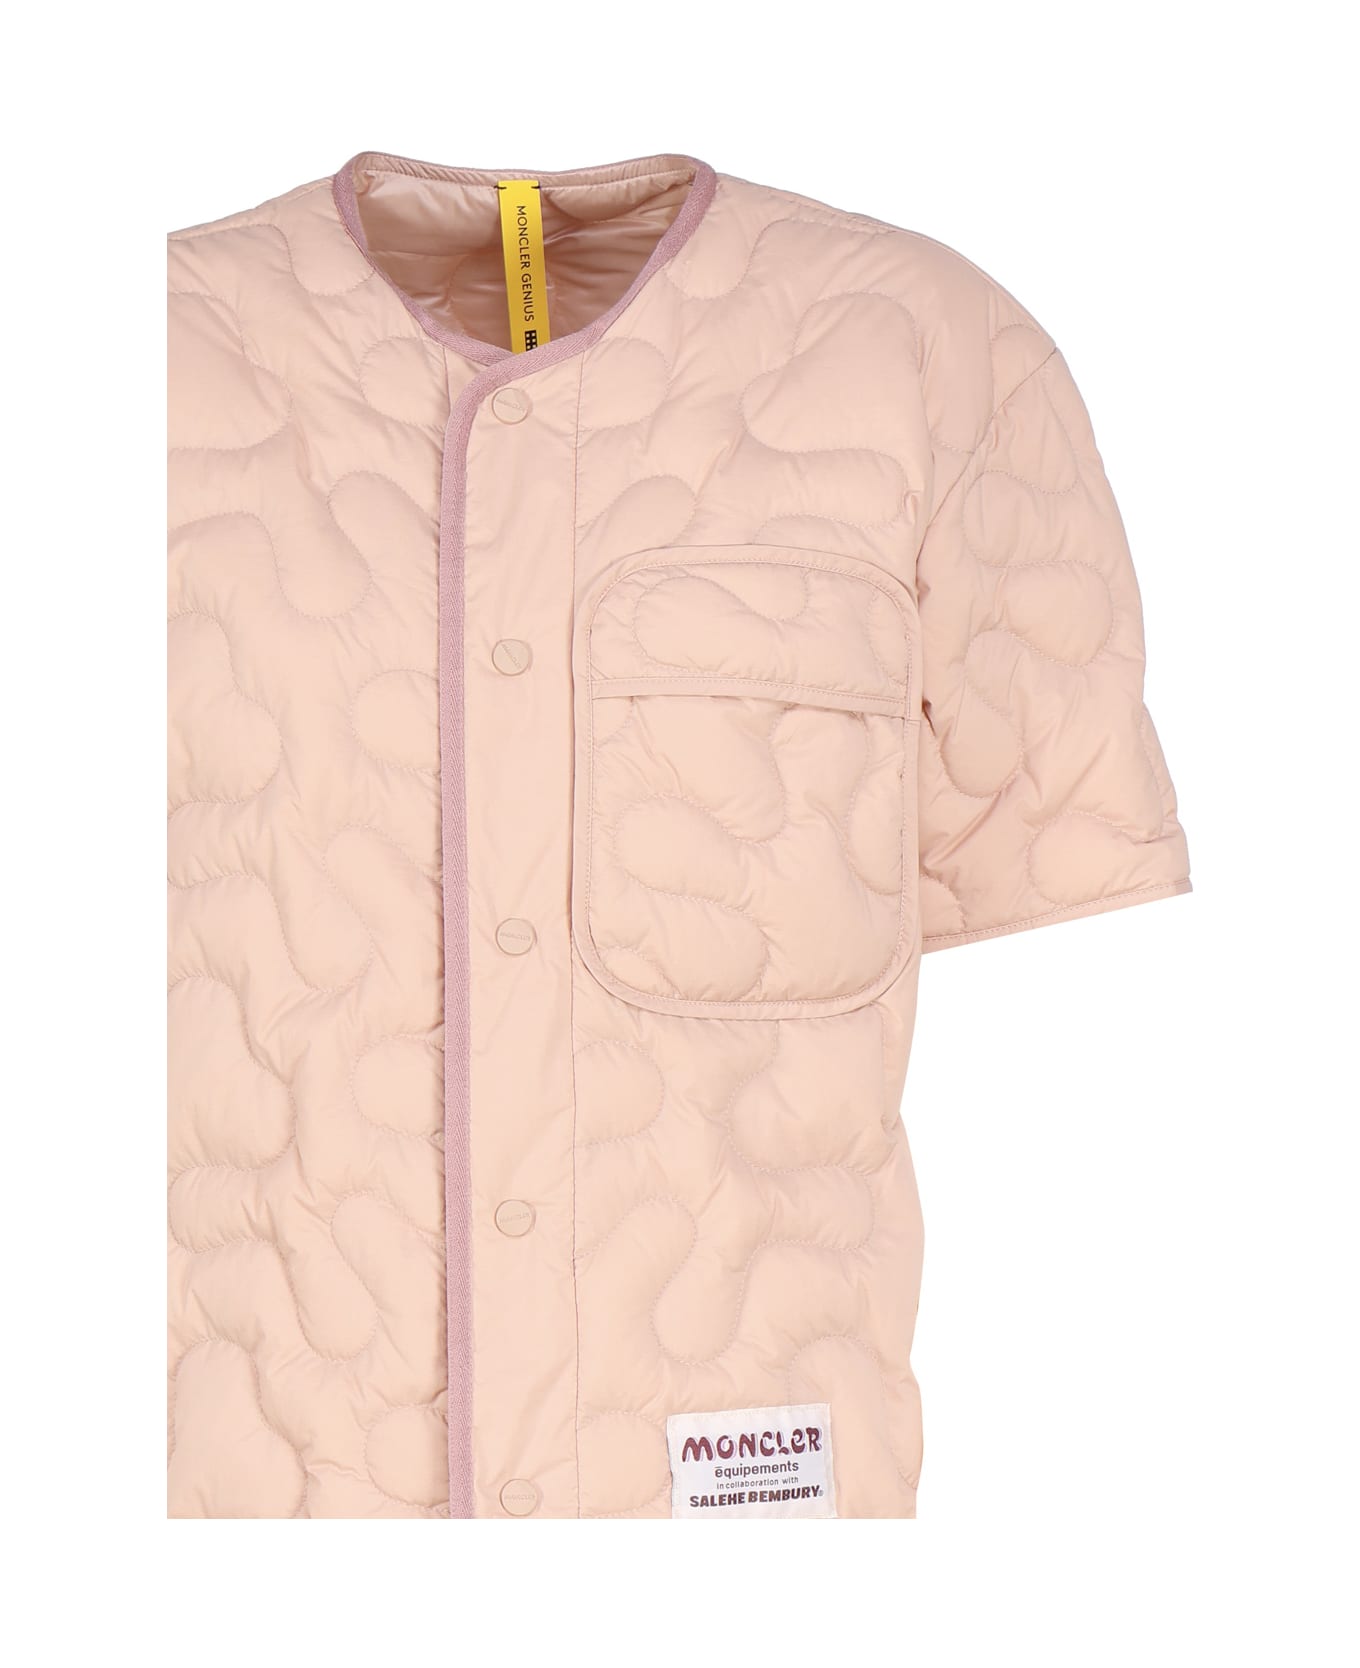 Moncler Genius Moncler X Salehe Bembury Padded Shirt - Pink トップス